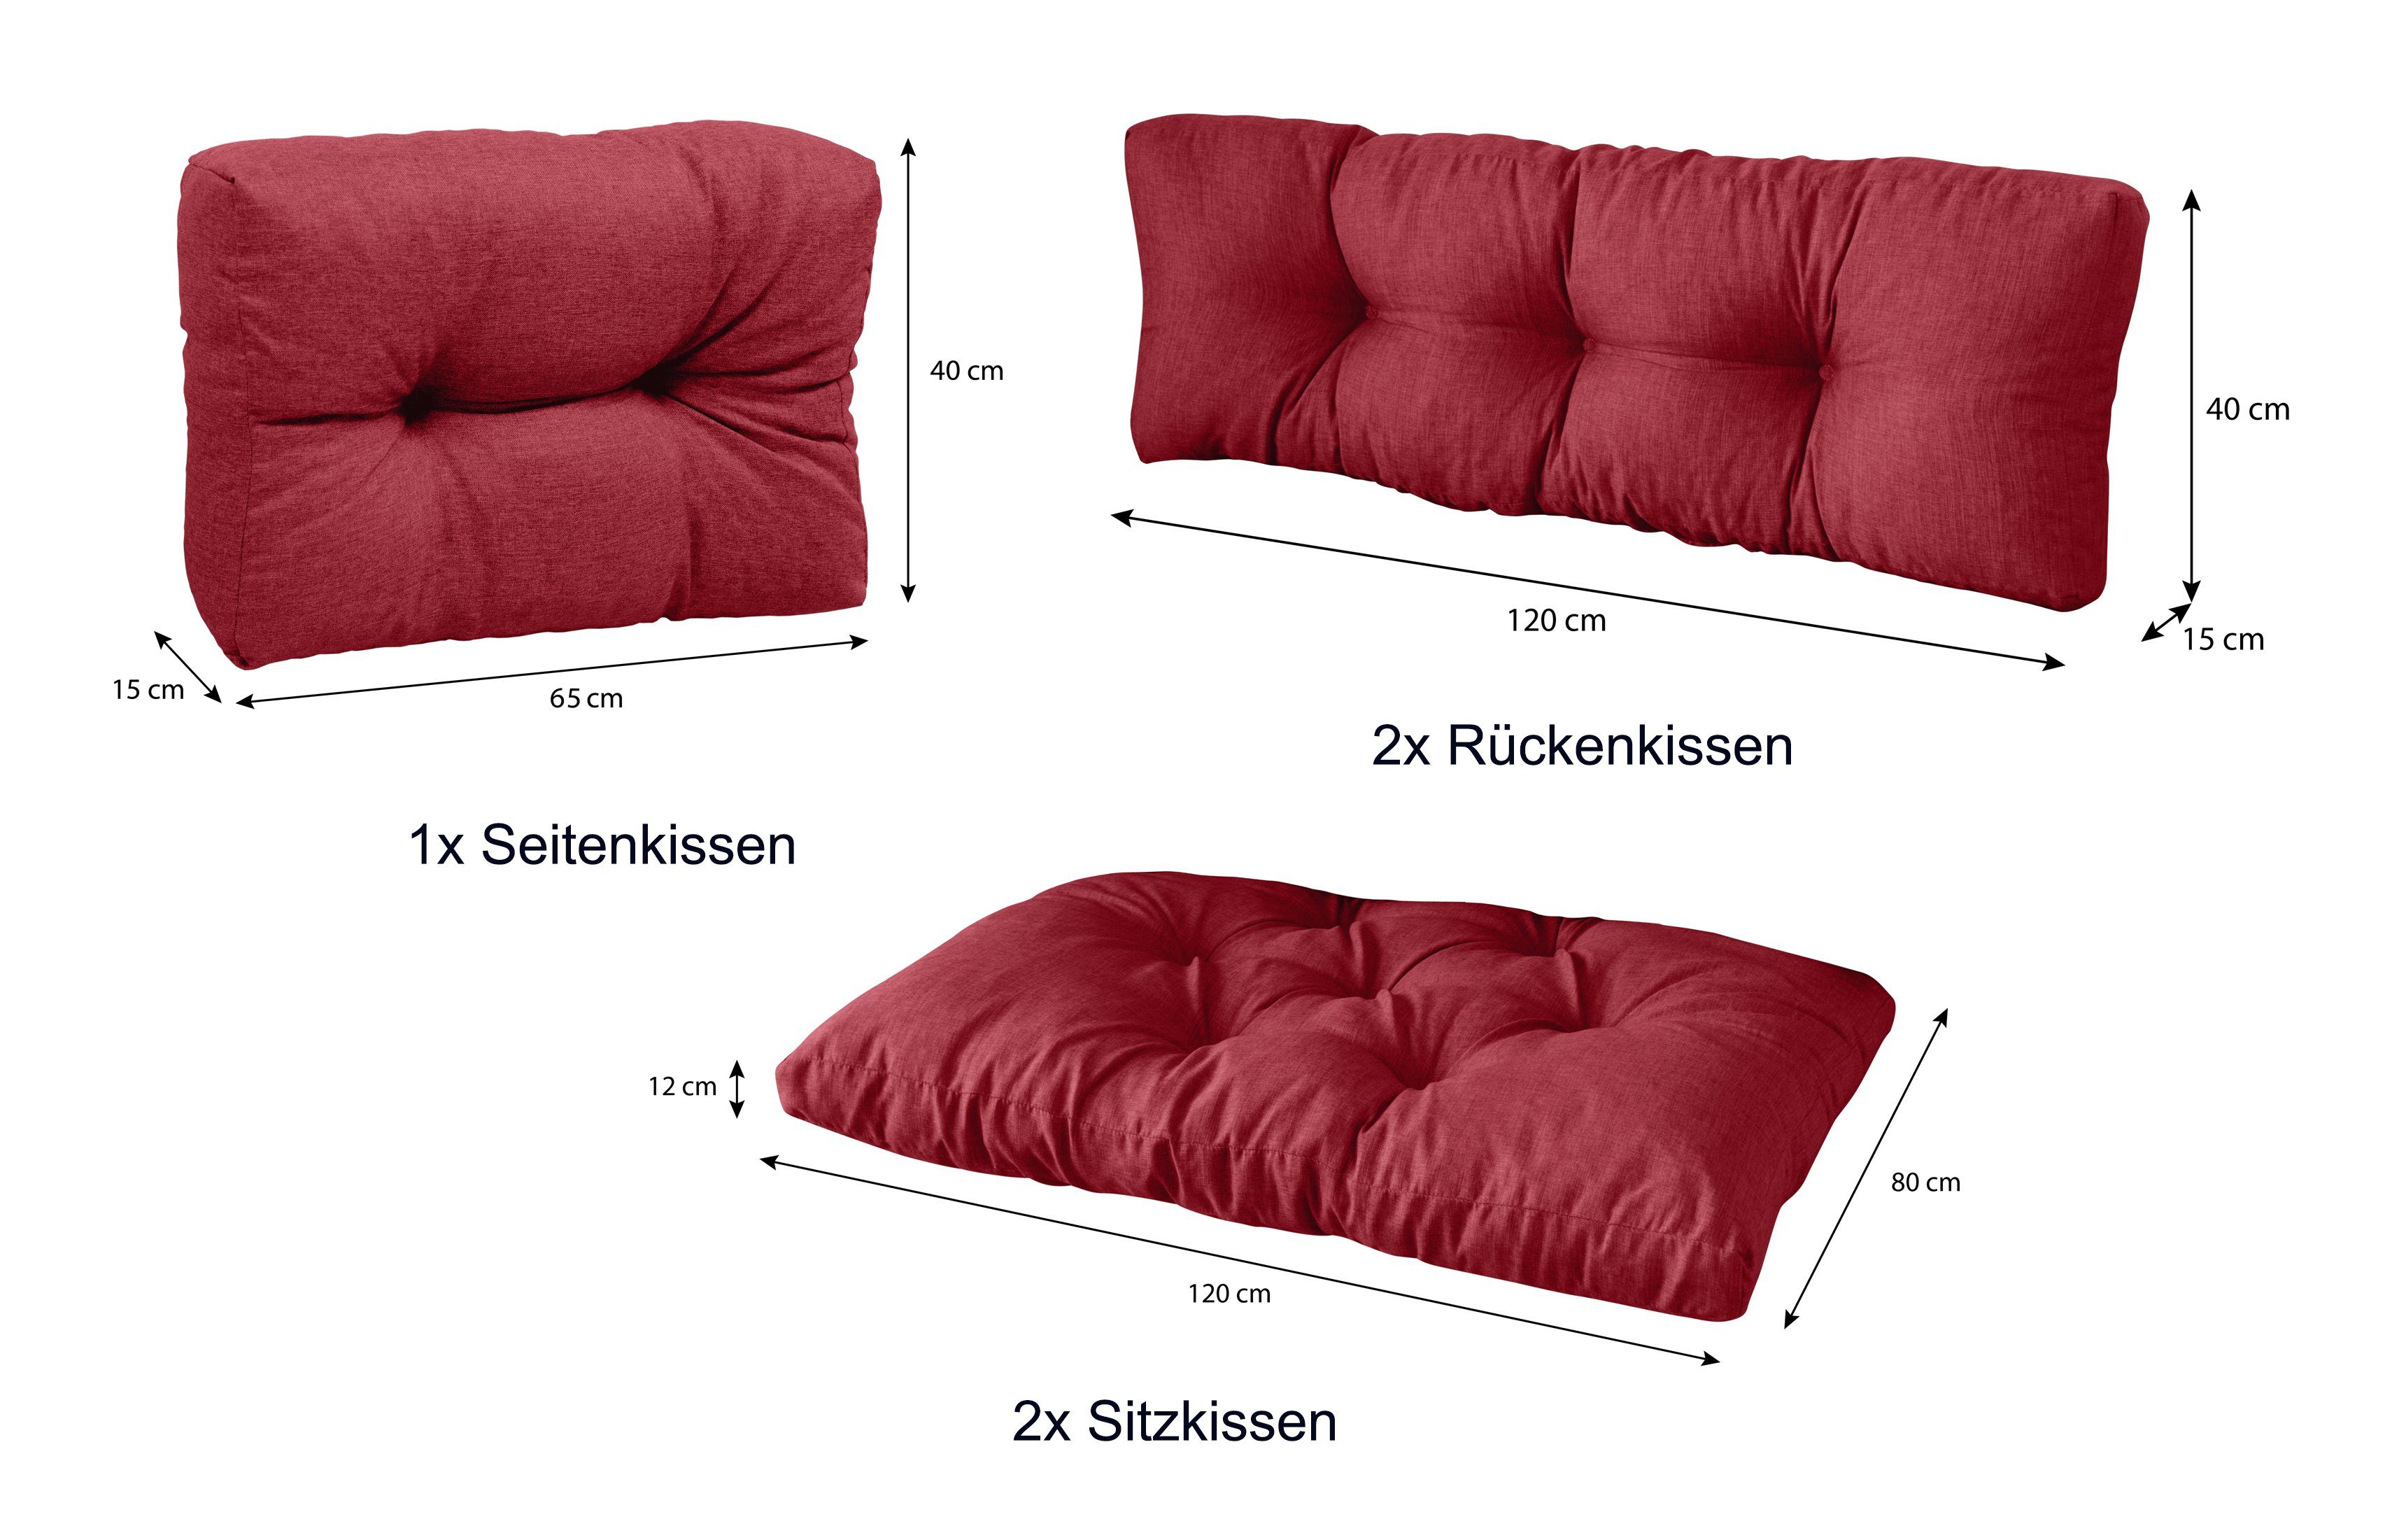 1x x + 120 Rückenkissen palettenmöbel 2x 2x Rot palettencouch Set: sunnypillow Palettenkissen + polsterauflage Sitzkissen 80 5er Seitenkissen,